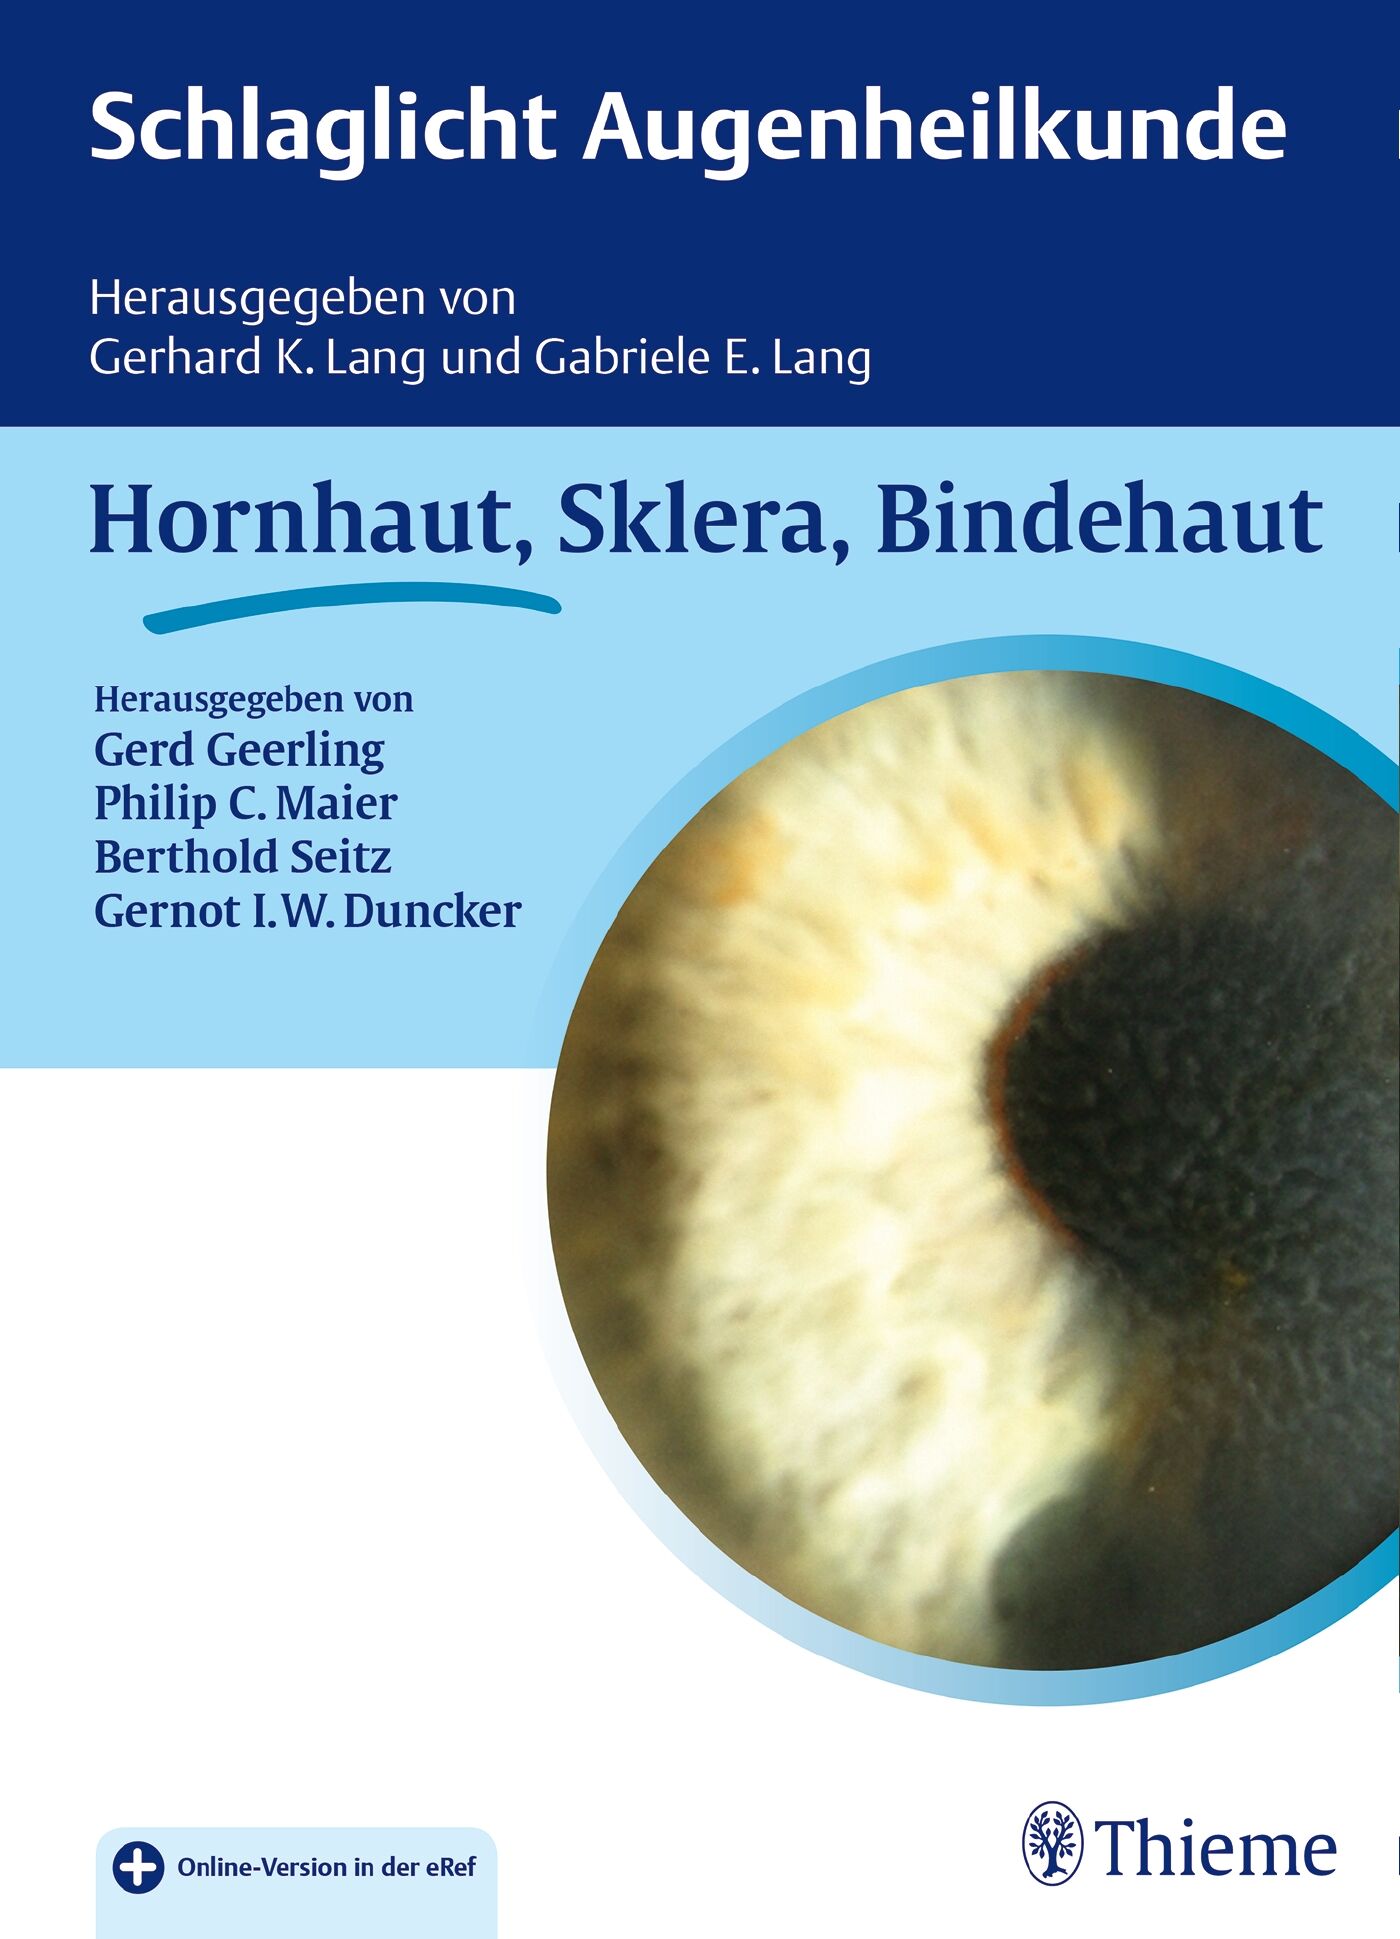 Schlaglicht Augenheilkunde: Hornhaut, Sklera, Bindehaut, 9783132030916